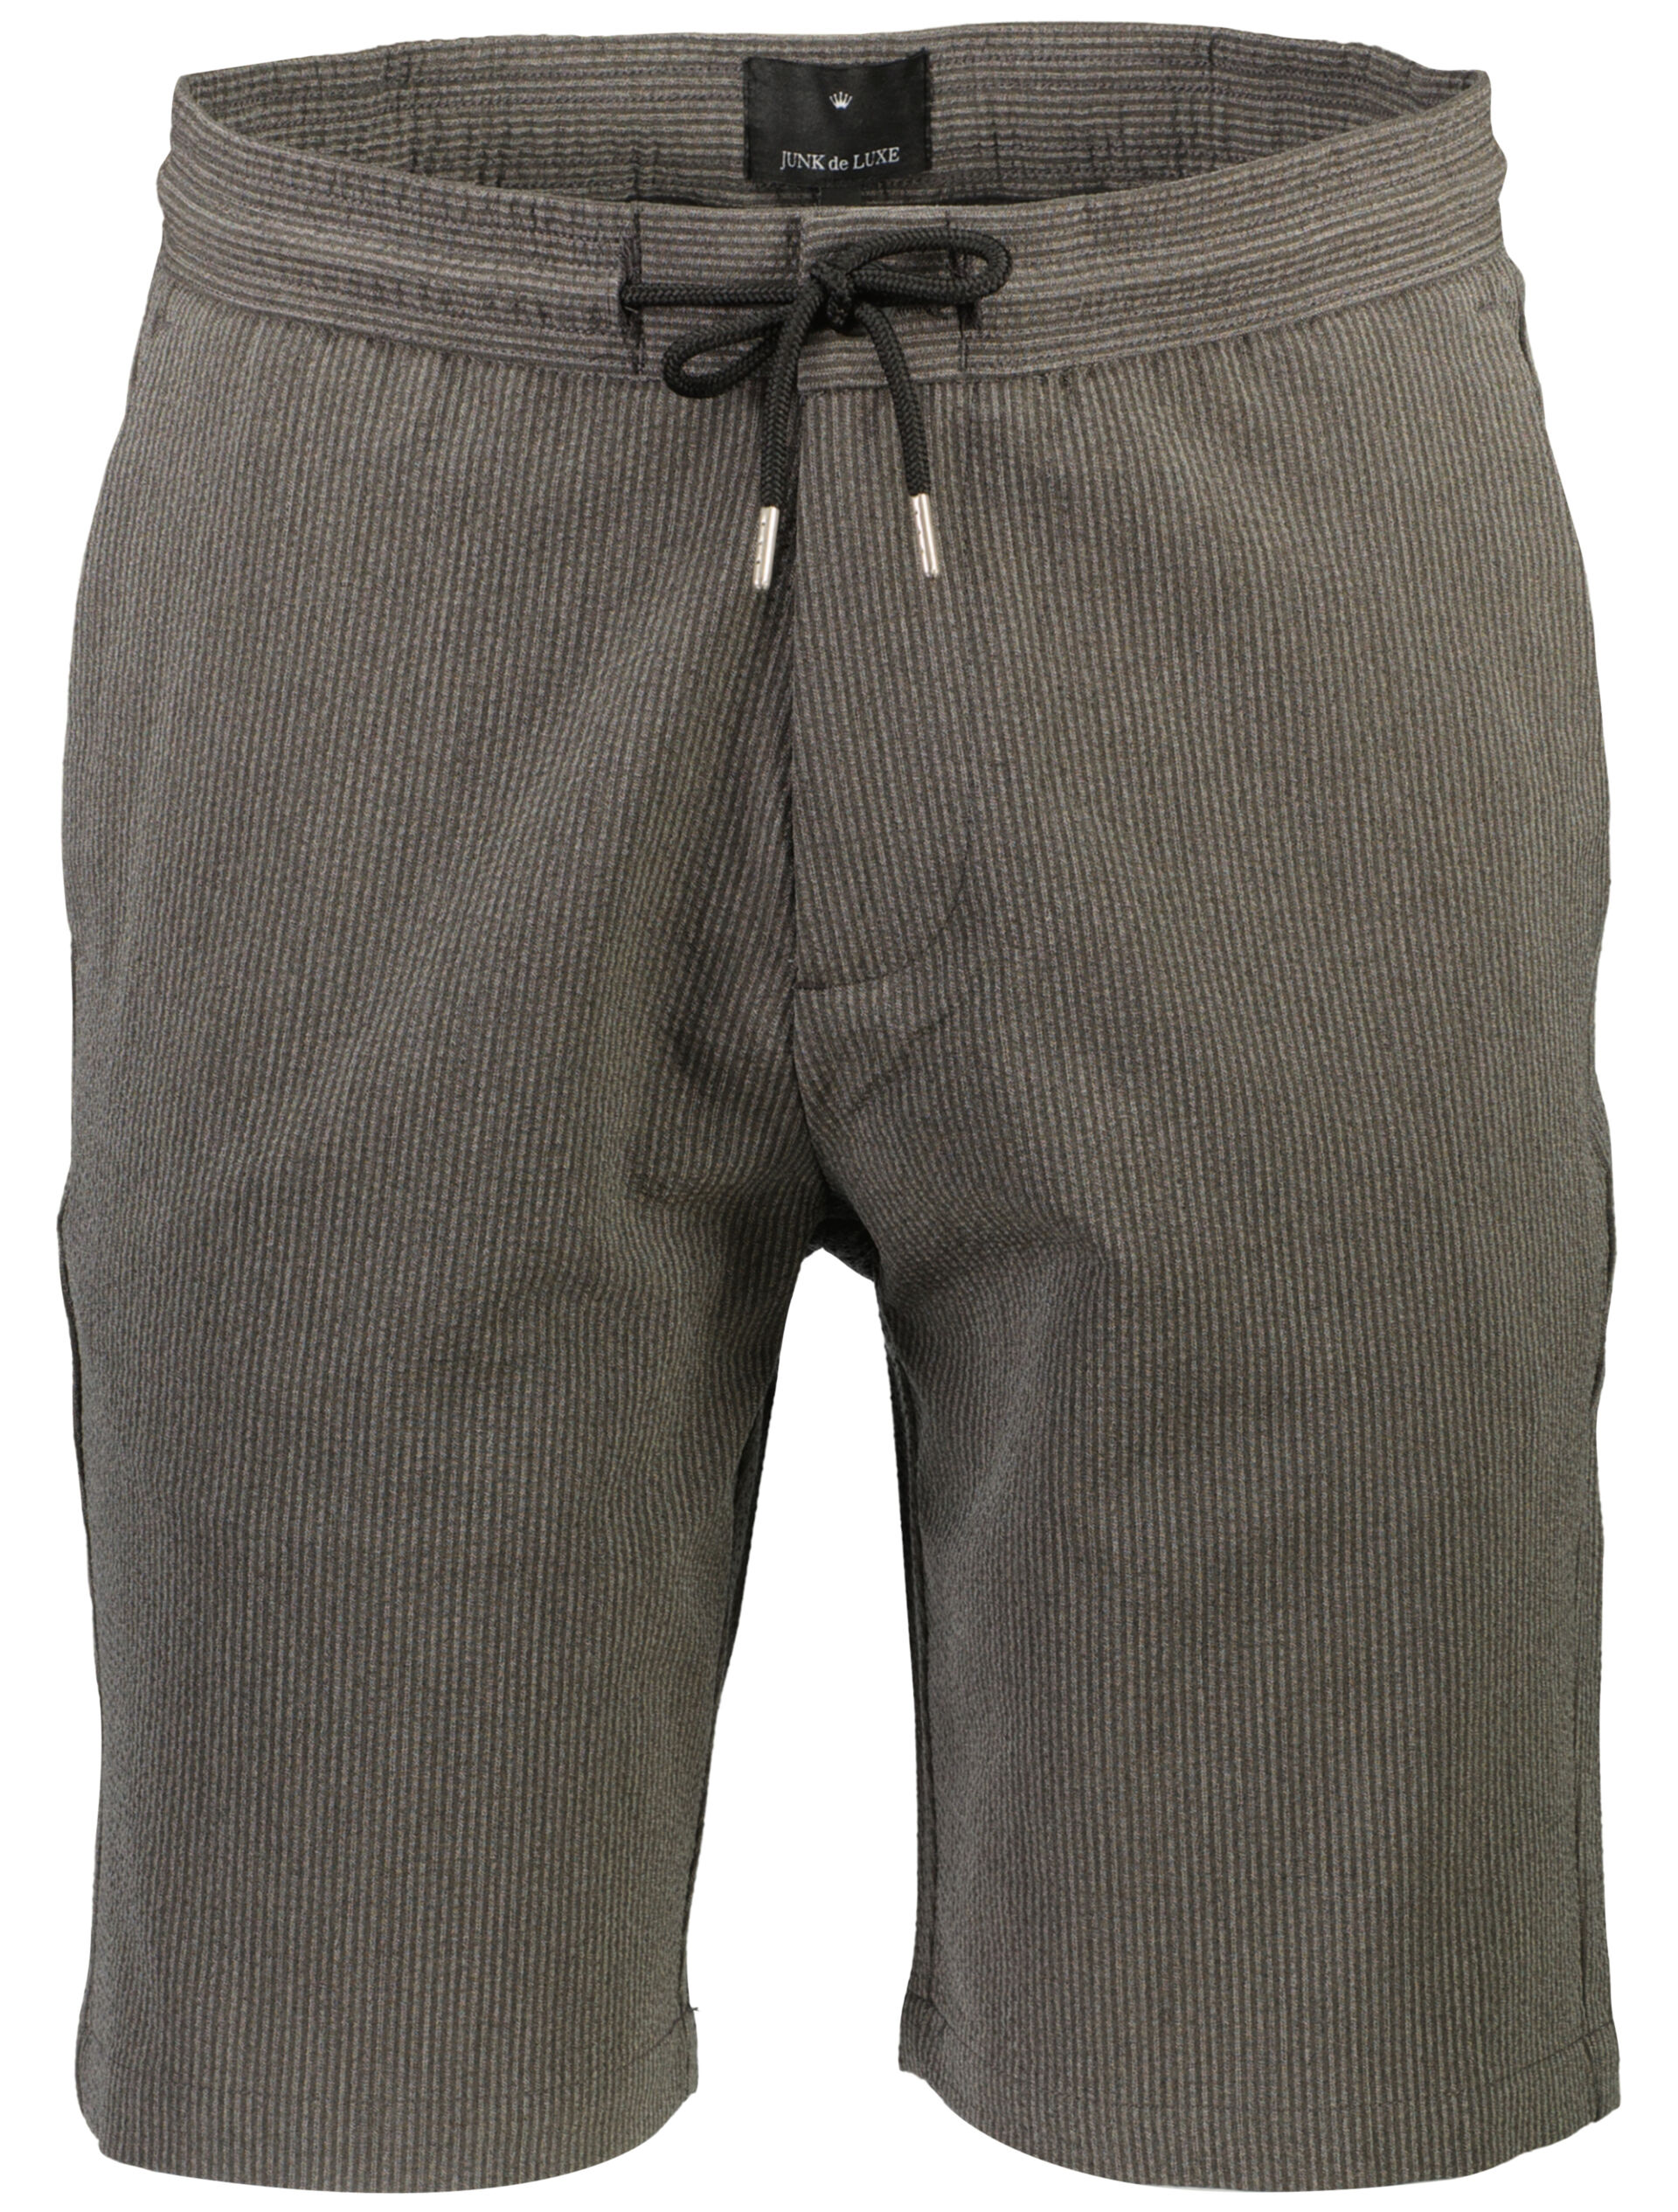 Casual shorts Casual shorts Grey 60-552024